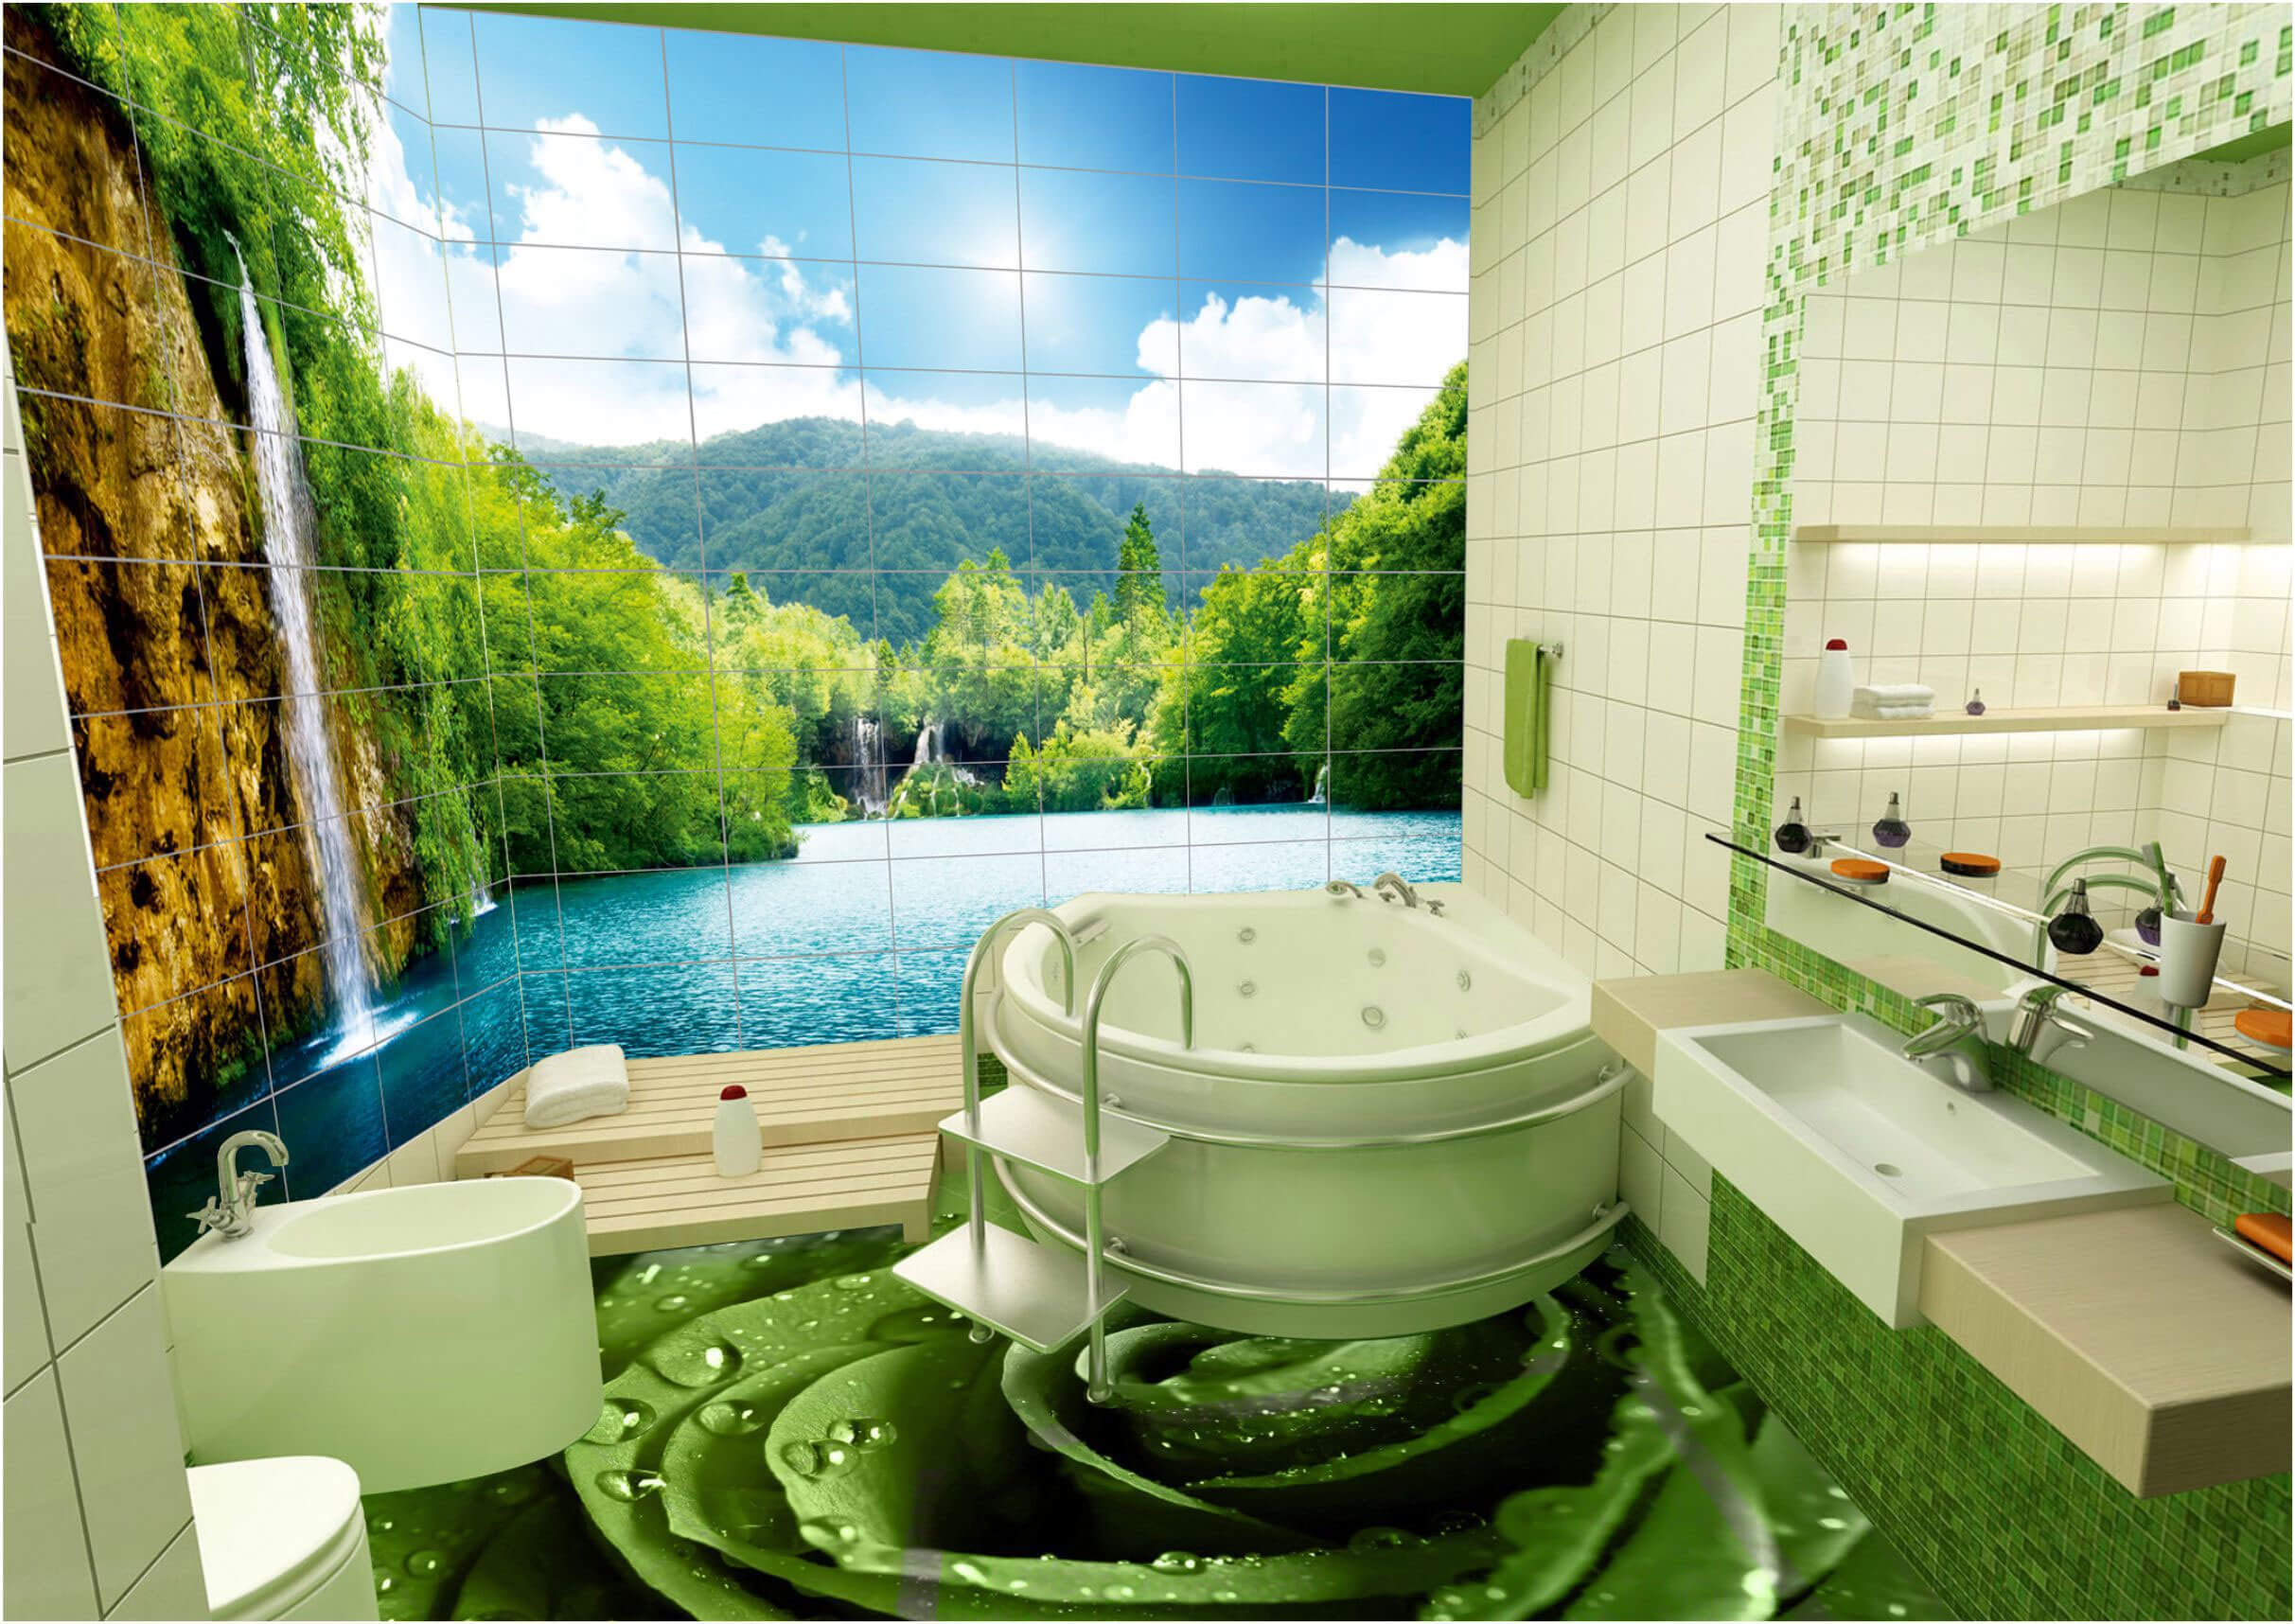 Сучасний дизайн ванної кімнати